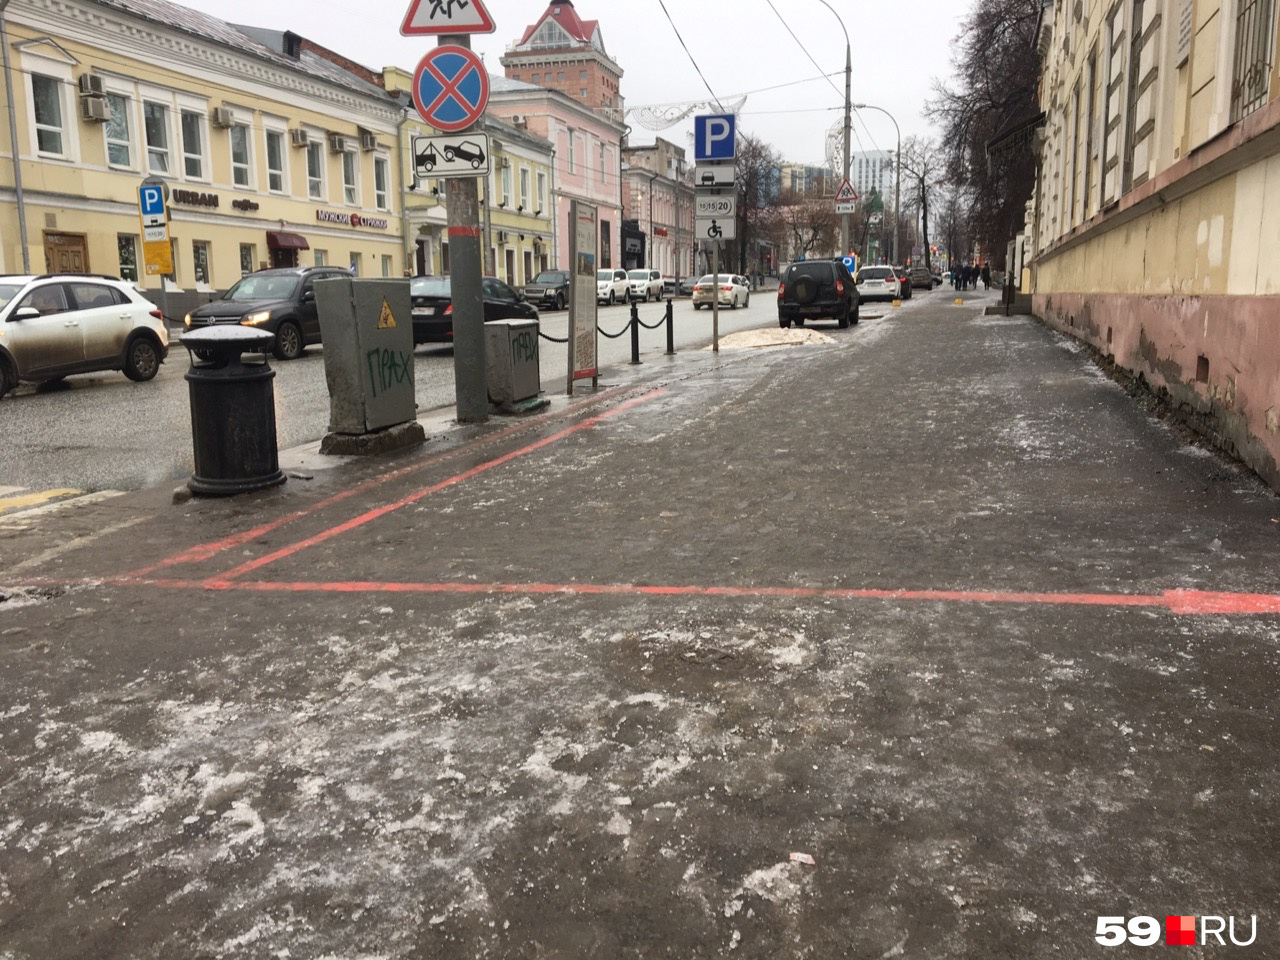 Следующий квартал — лед на тротуаре и очень скользко 